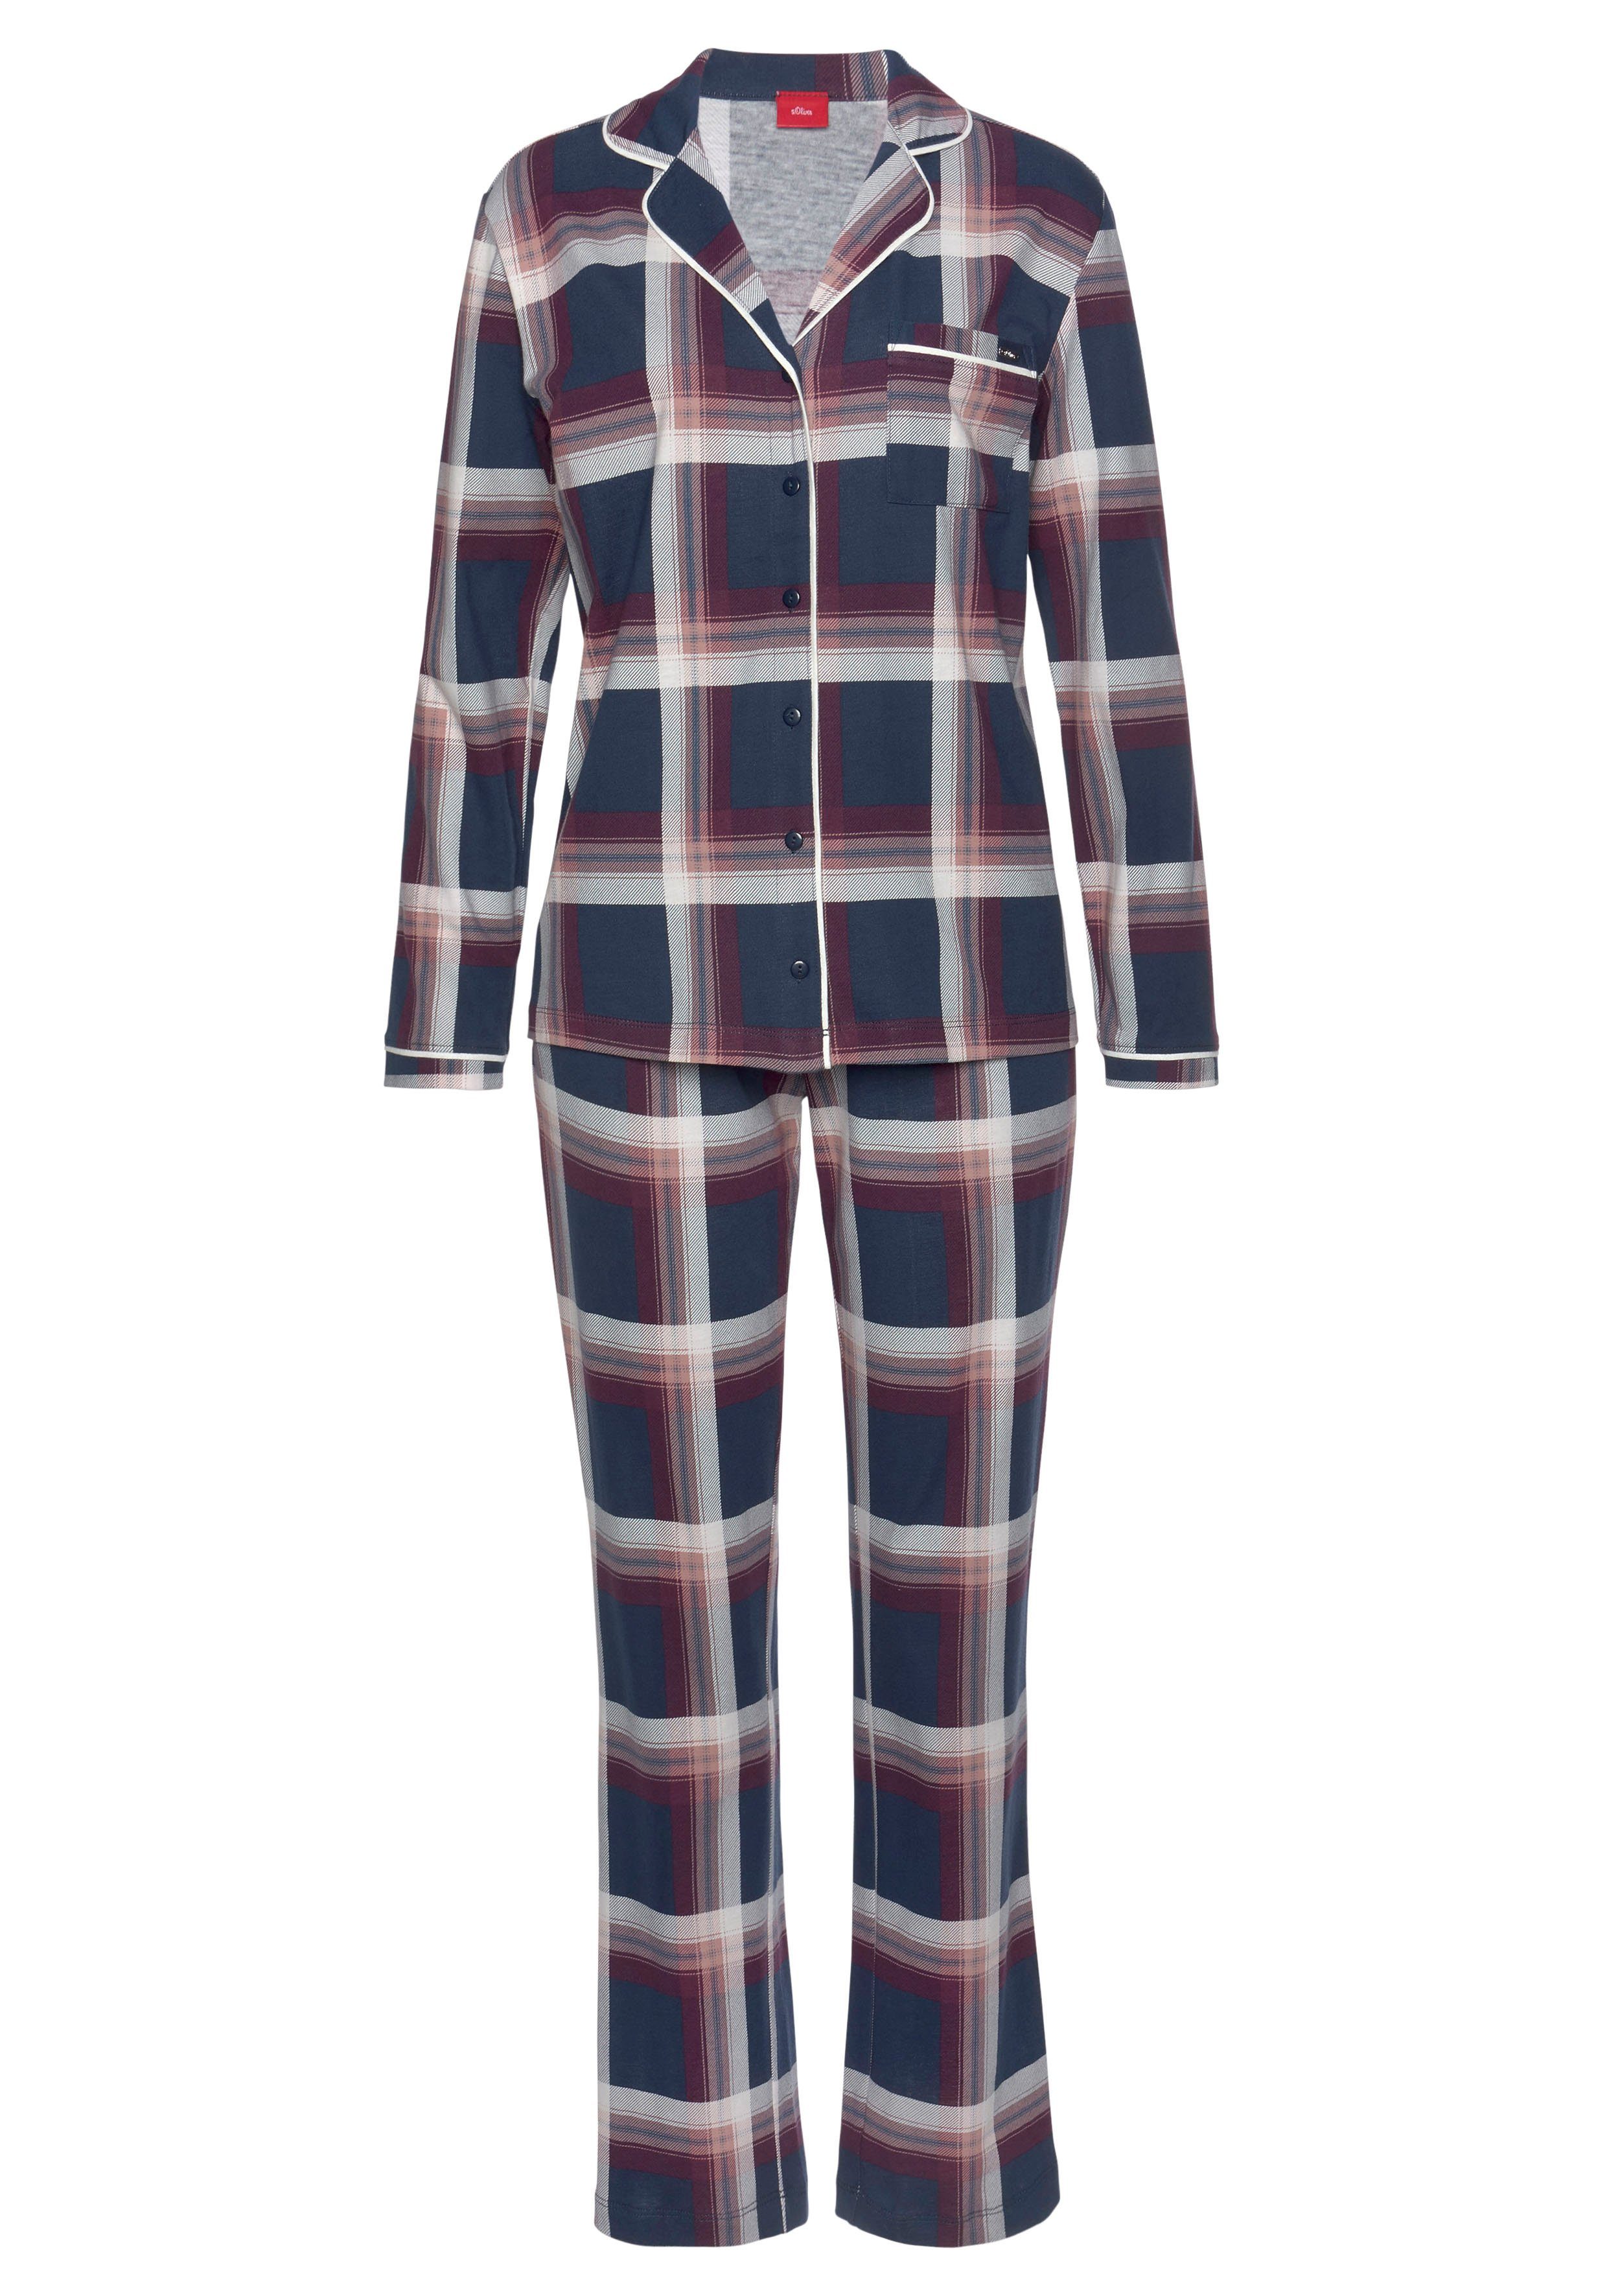 Wir stellen eine super berühmte Marke vor! s.Oliver Pyjama (2 klassischen tlg) im Karo-Muster